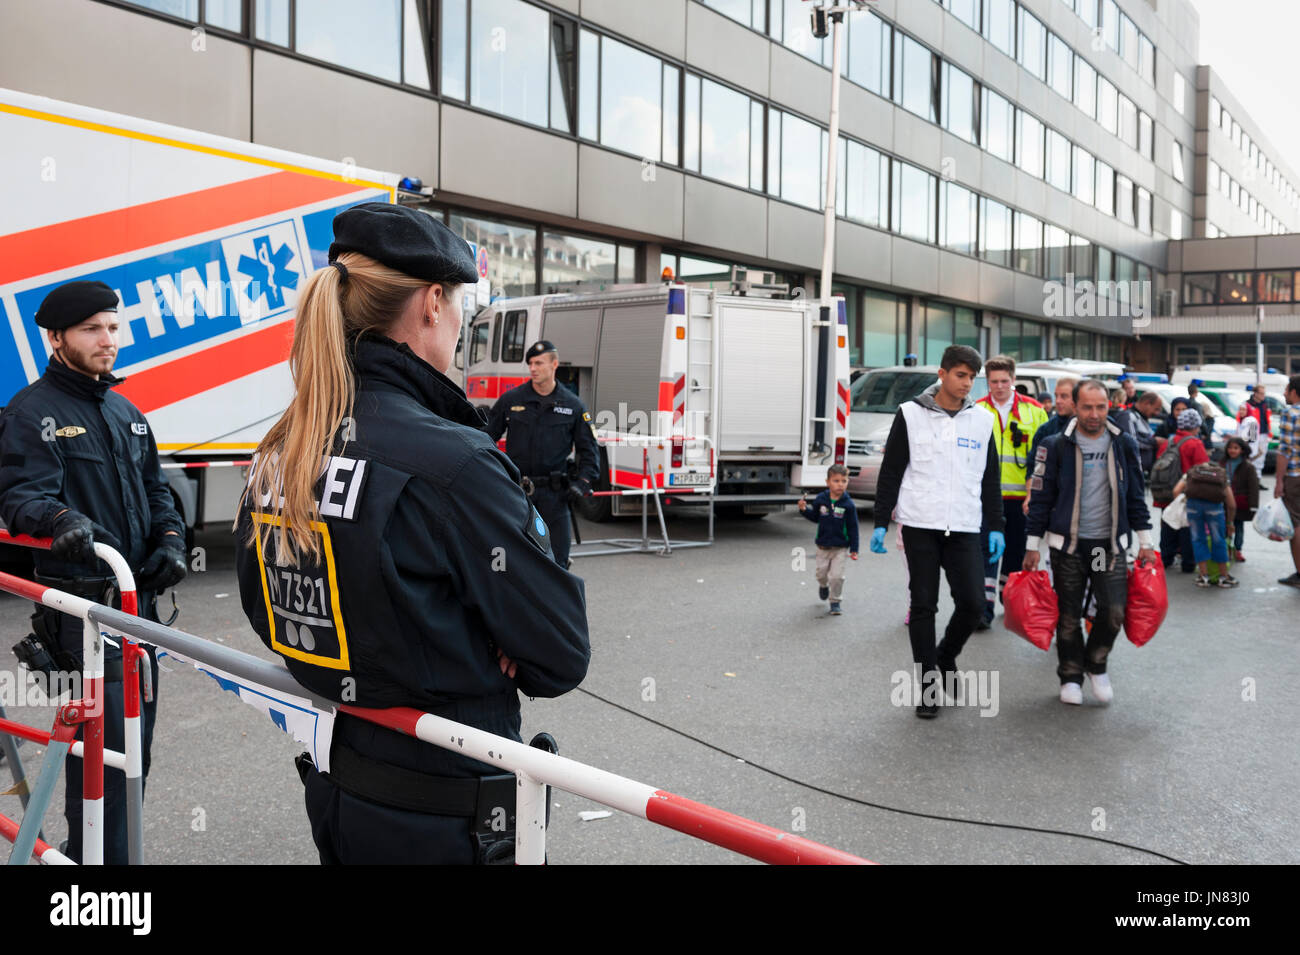 Monaco di Baviera, Germania - Settembre 10th, 2015: Polizia Tedesca e aiutanti sono in attesa per la successiva coda di rifugiati dalla Siria, Afghanistan e i Balcani. Foto Stock